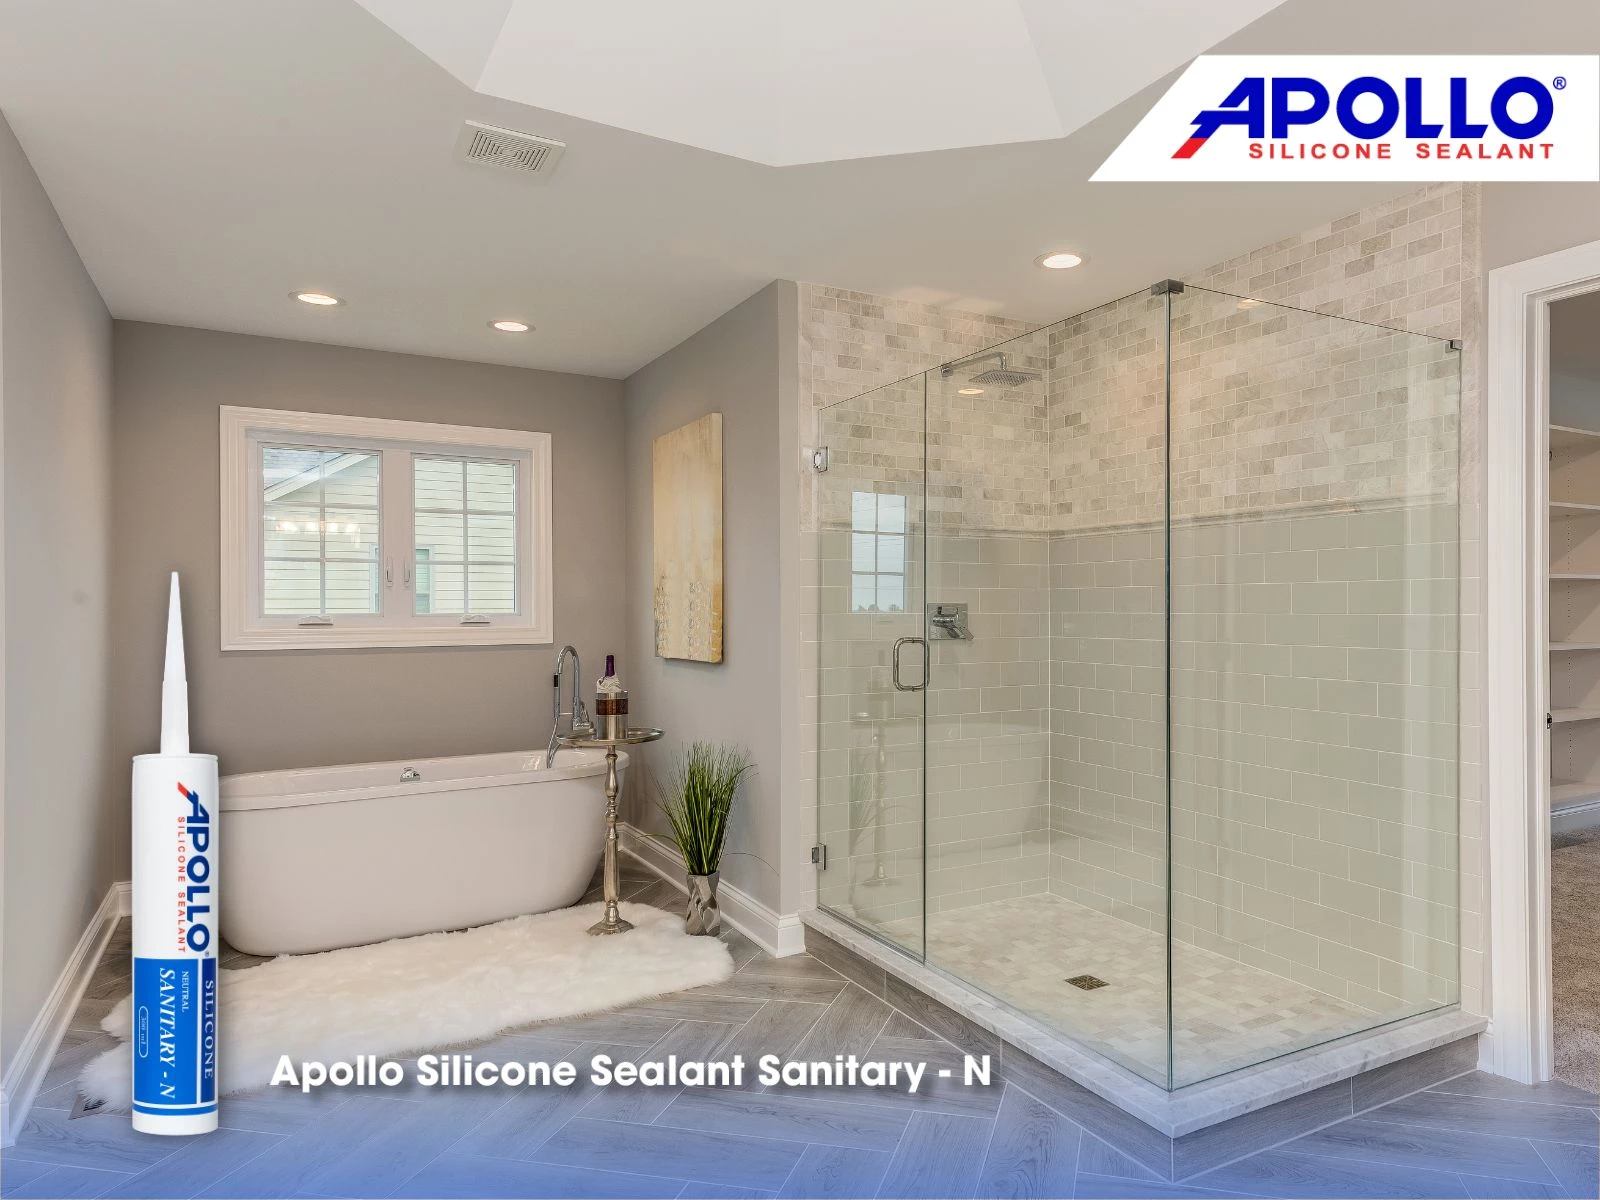 Thi công trám vách kính với keo Apollo Sanitary - N giúp tạo tính thẩm mỹ cho cửa kính nhà tắm.